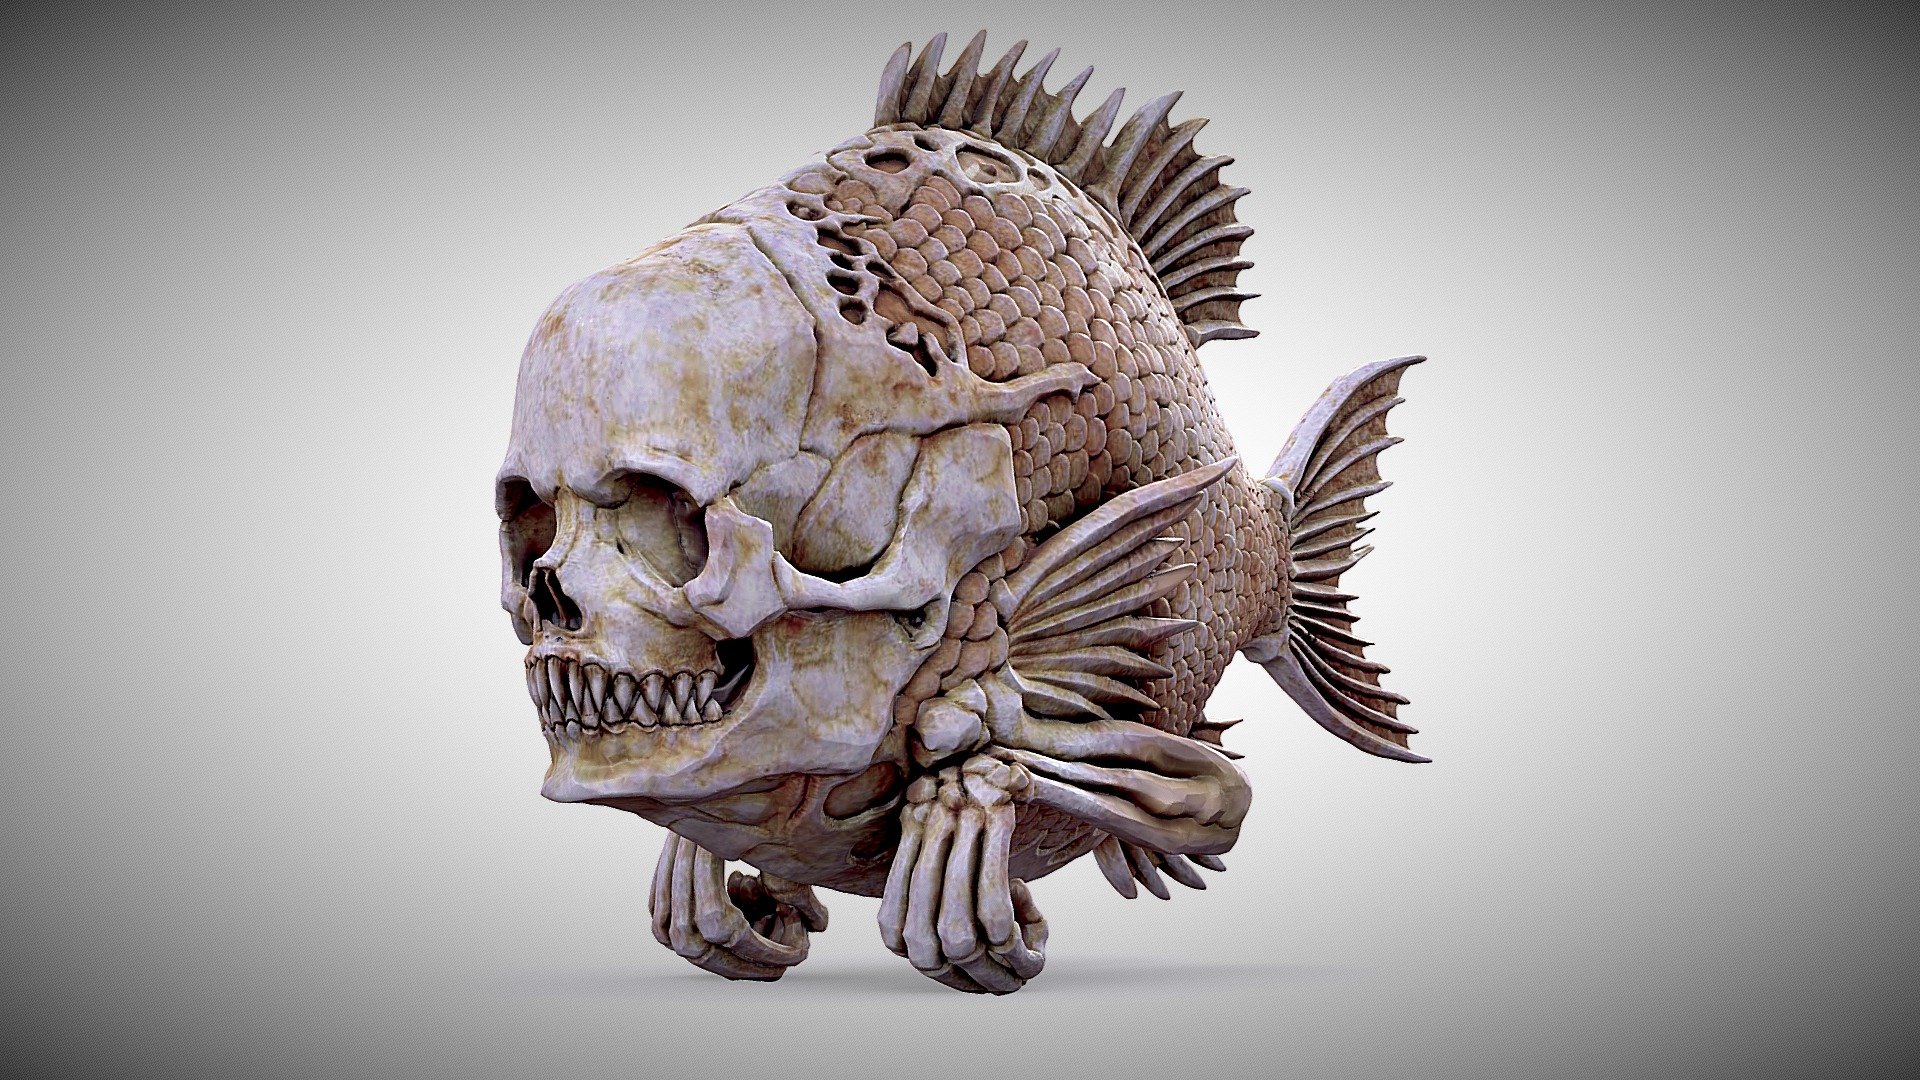 3d model of monster fish ,main idea from Gerald Brom samename drawing - FISHHEAD - 3D model by Alex Dubnoff (@alexdubnoff) 3d model